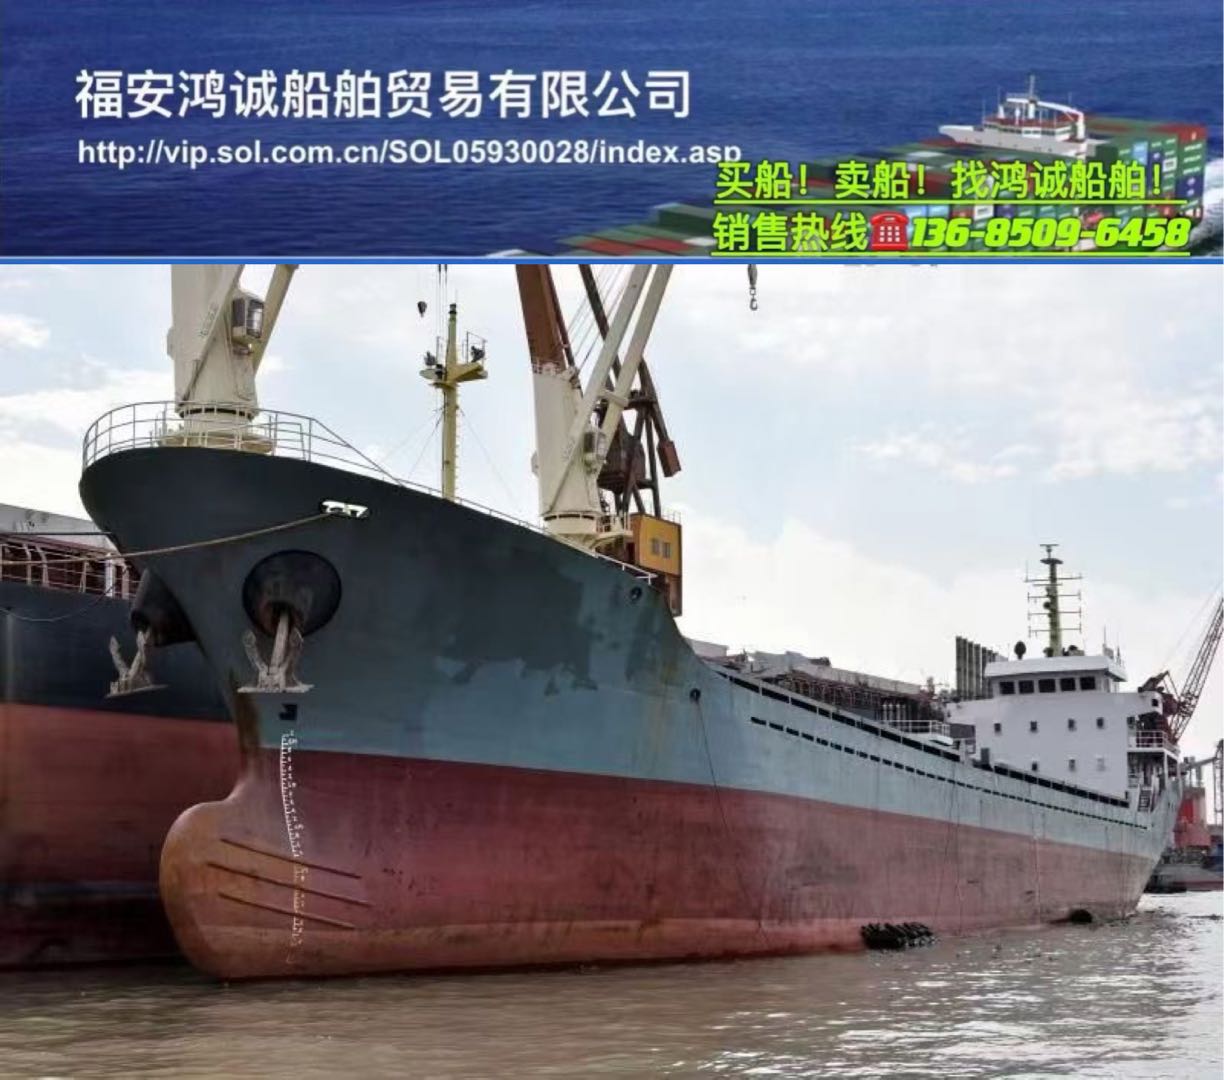 出售04年4500吨双壳干货船